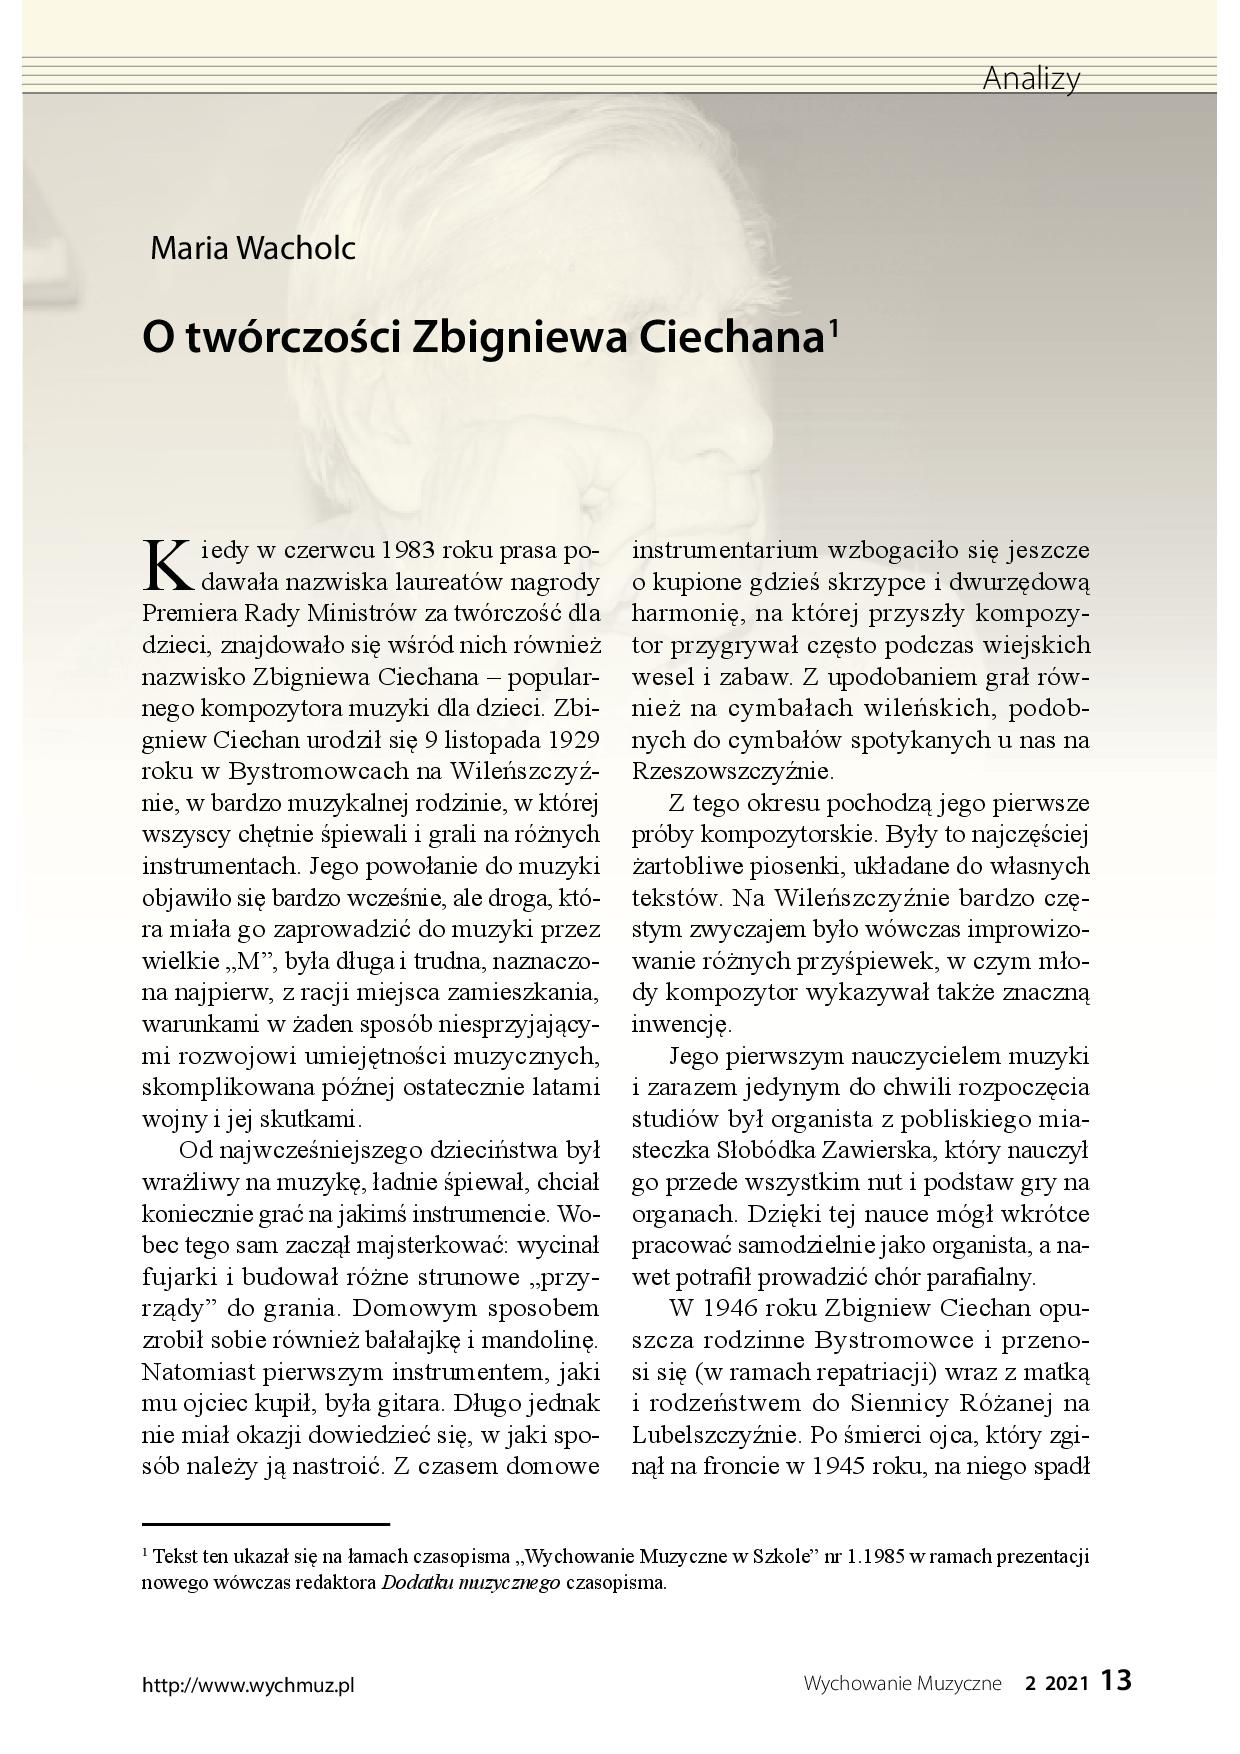 O twórczości Zbigniewa Ciechana